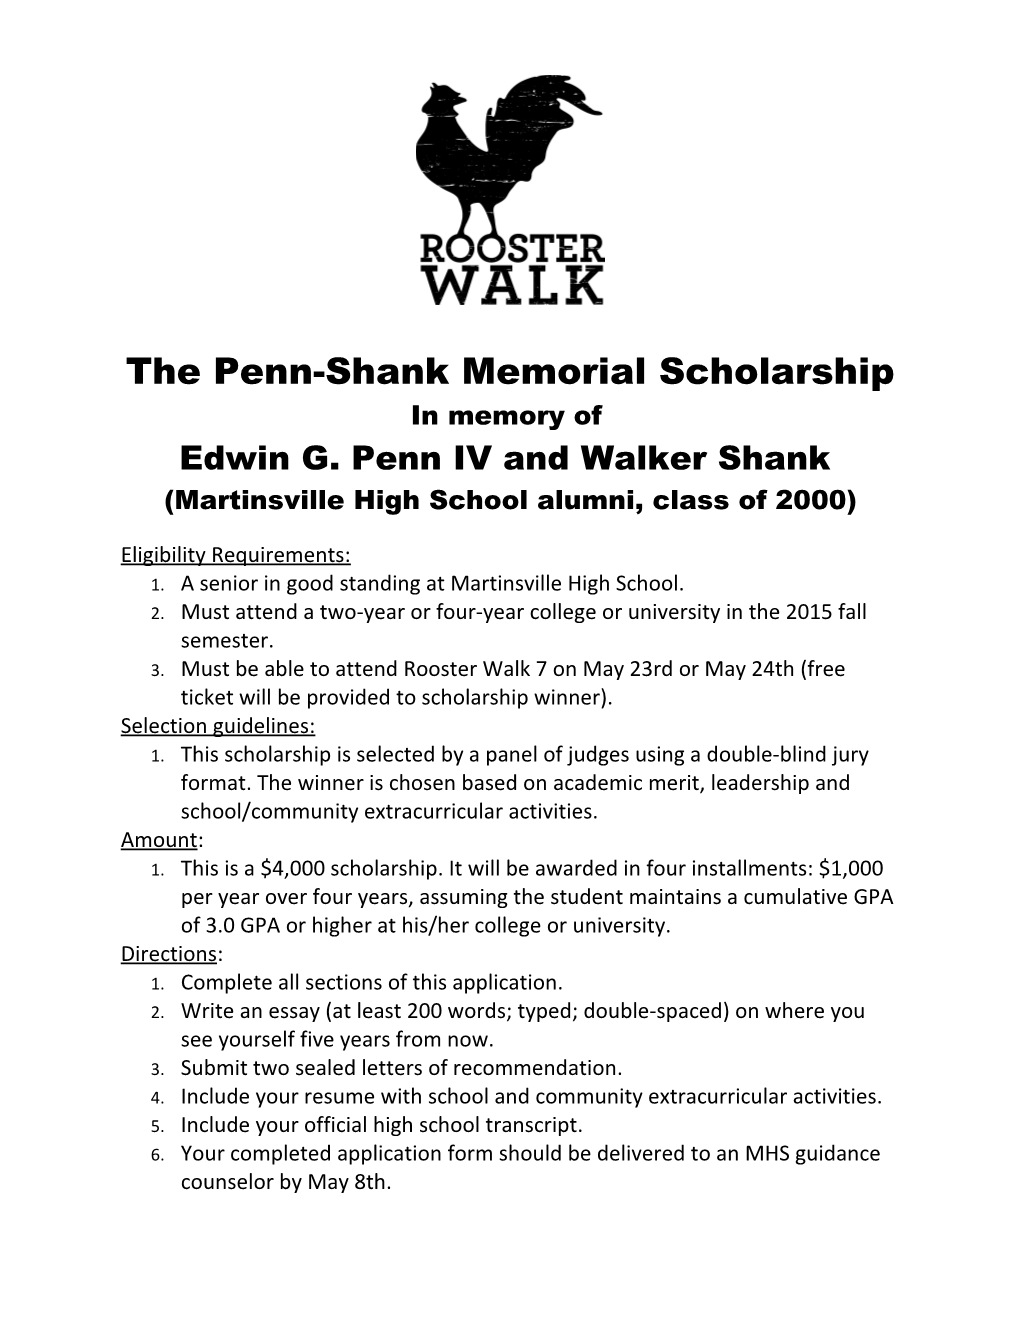 The Penn-Shank Memorial Scholarship